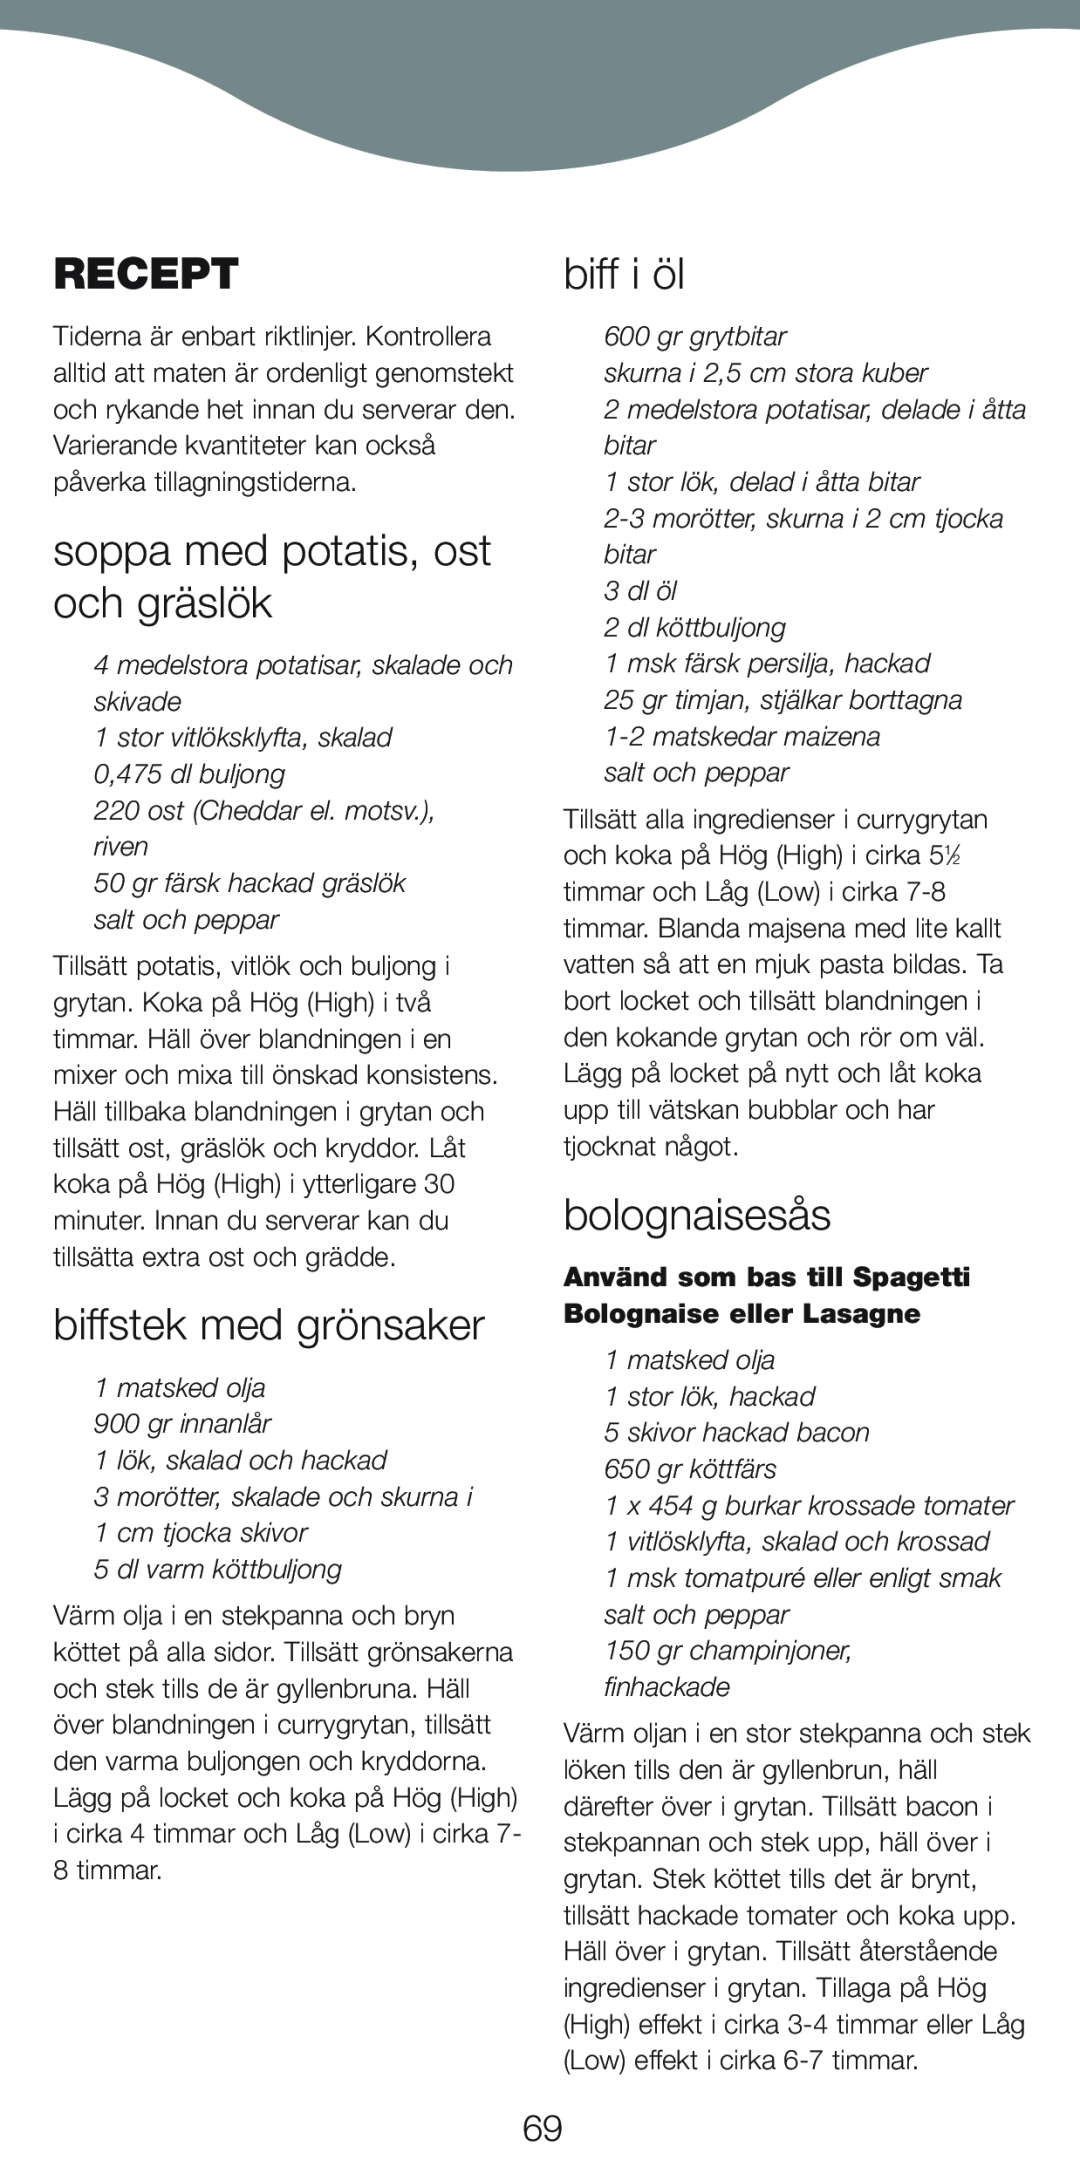 Kenwood CP707, CP706 manual Recept, soppa med potatis, ost och gräslök, biffstek med grönsaker, biff i öl, bolognaisesås 